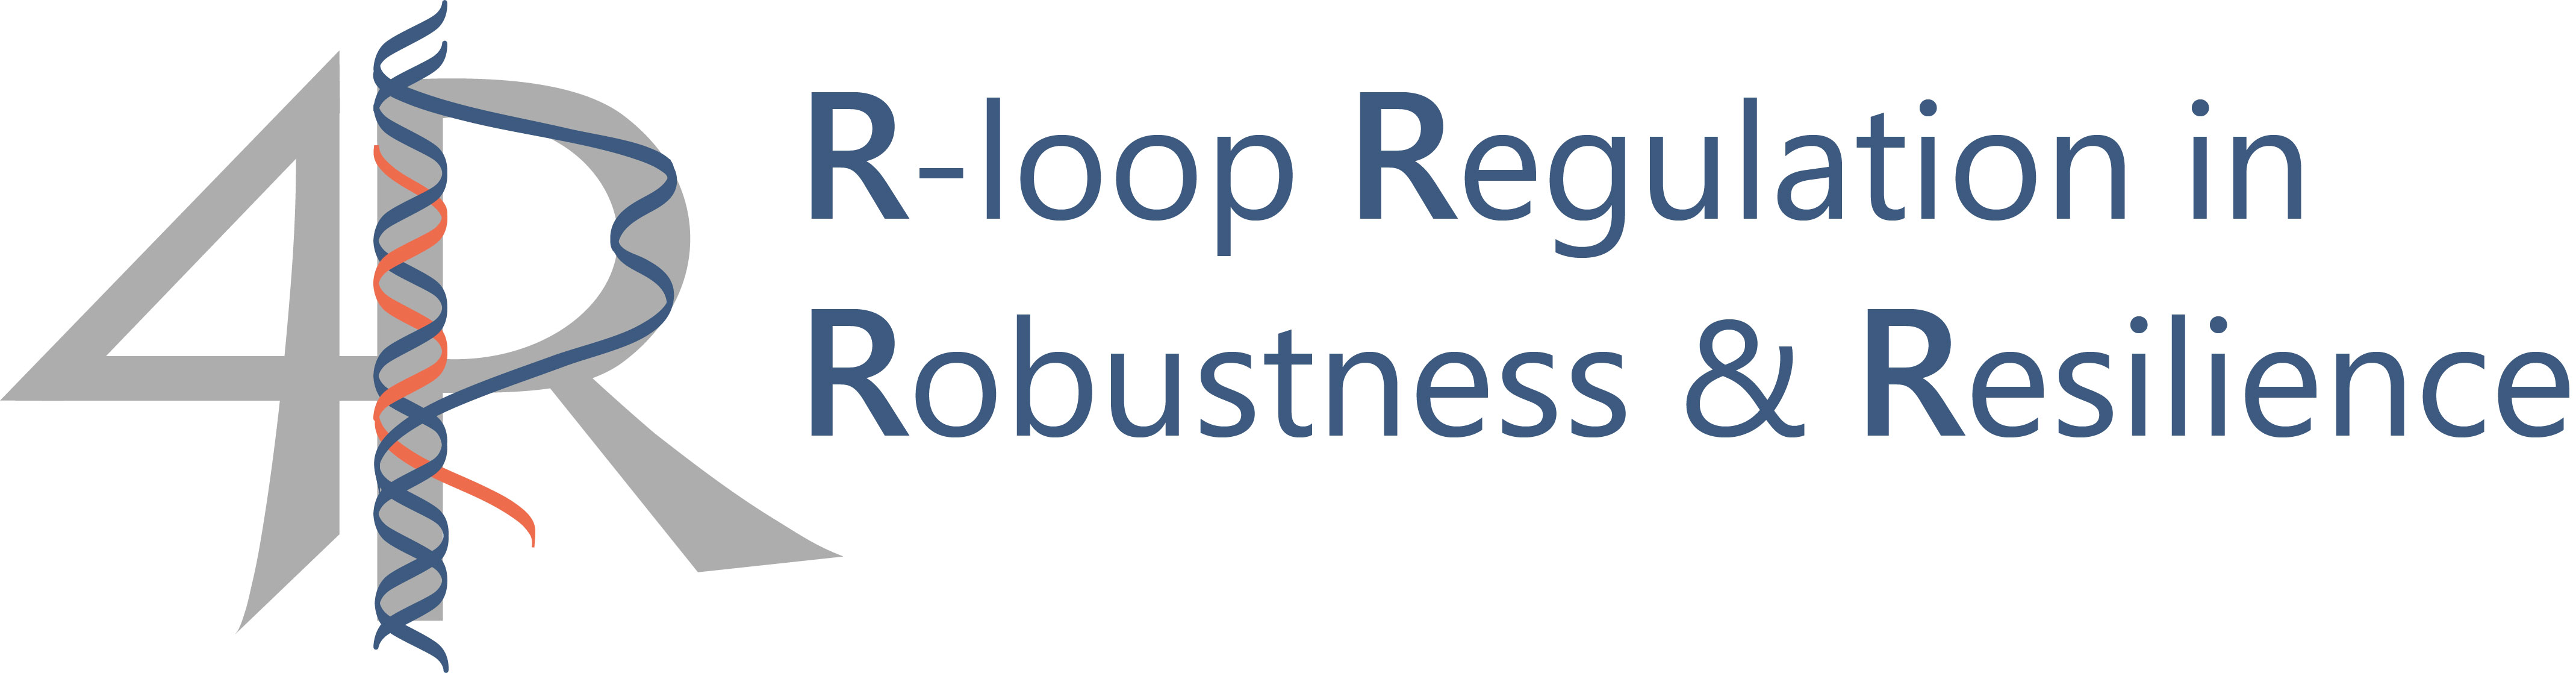 Icon Regulation von R-Loops in Robustheit & Resilienz (GRK 2859)